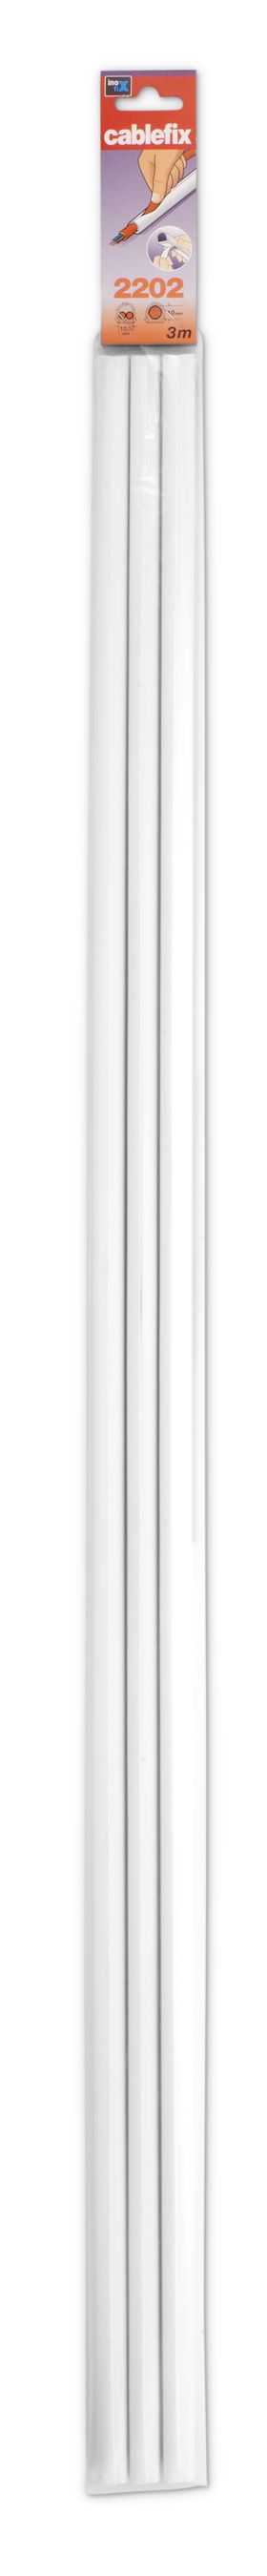 Goulotte 10mm blanc auto-adhésif 1m 3 pcs.